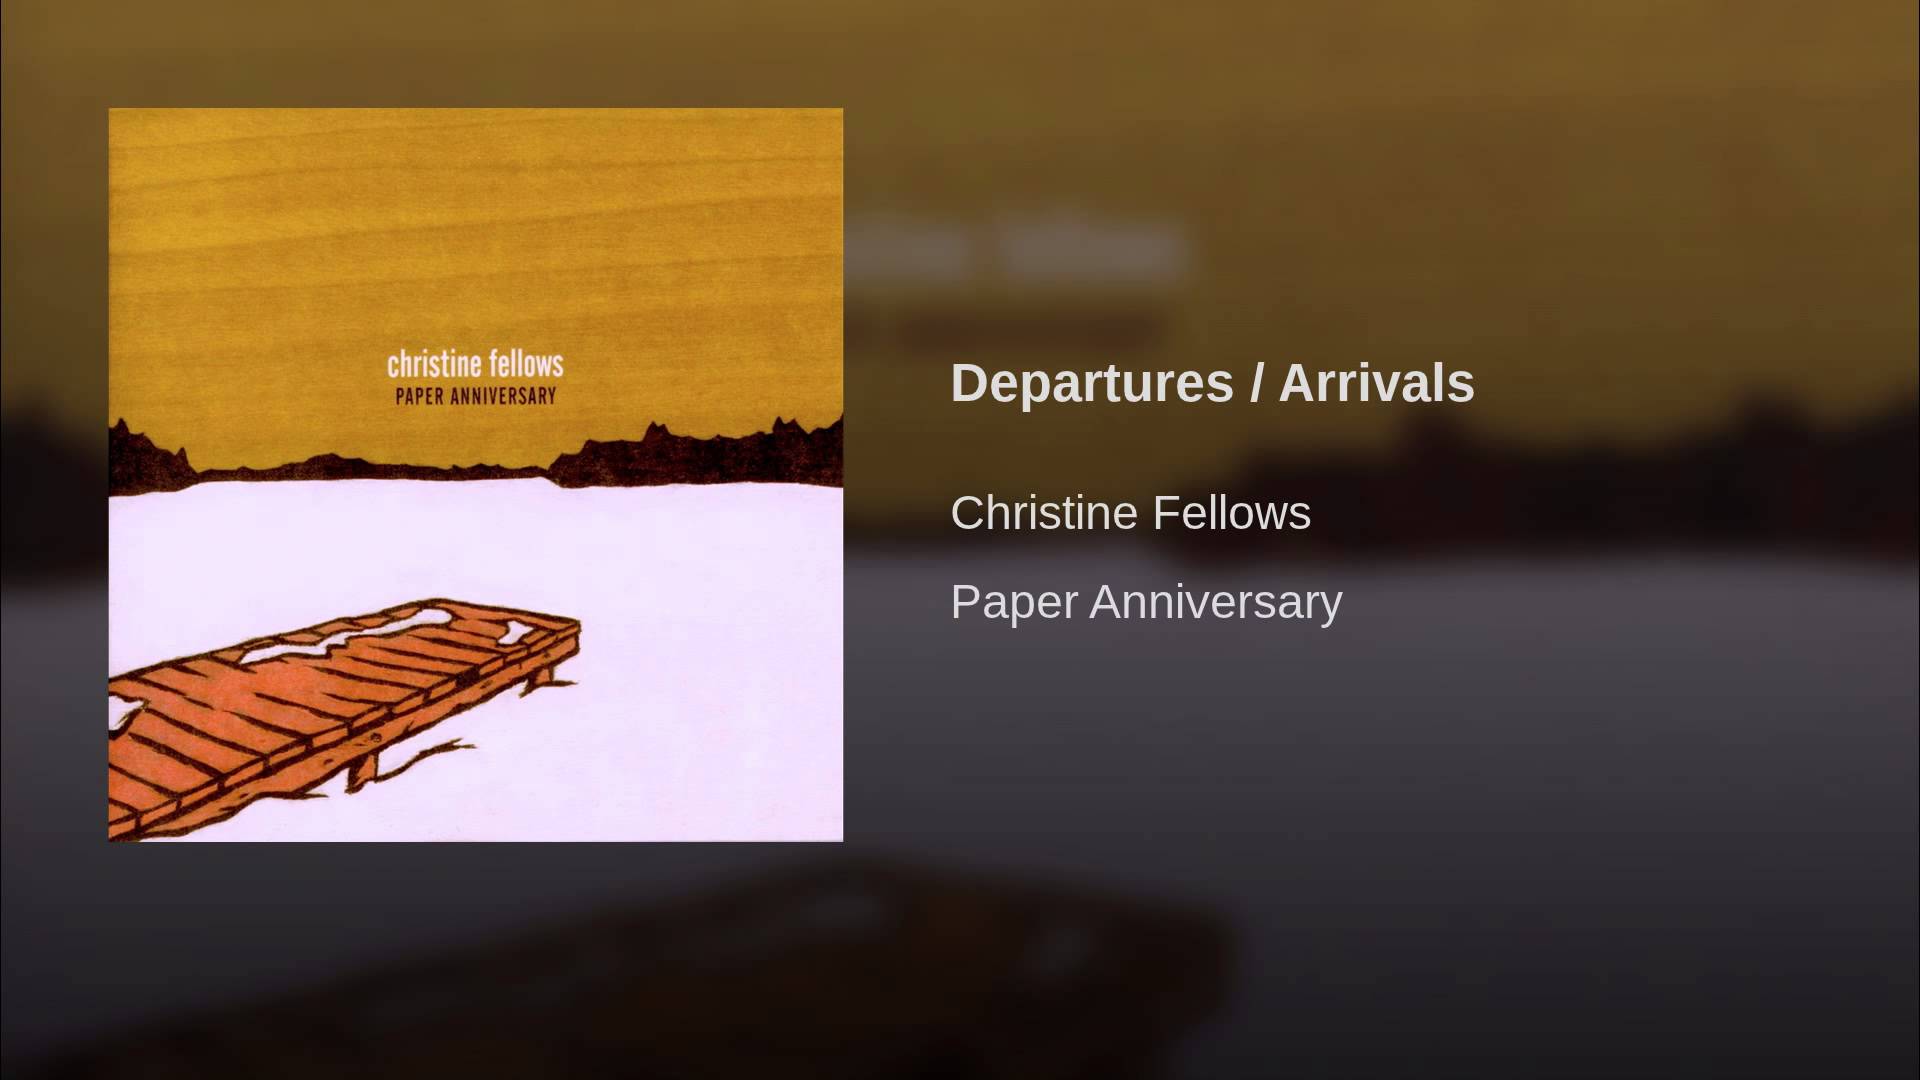 Departures / Arrivals